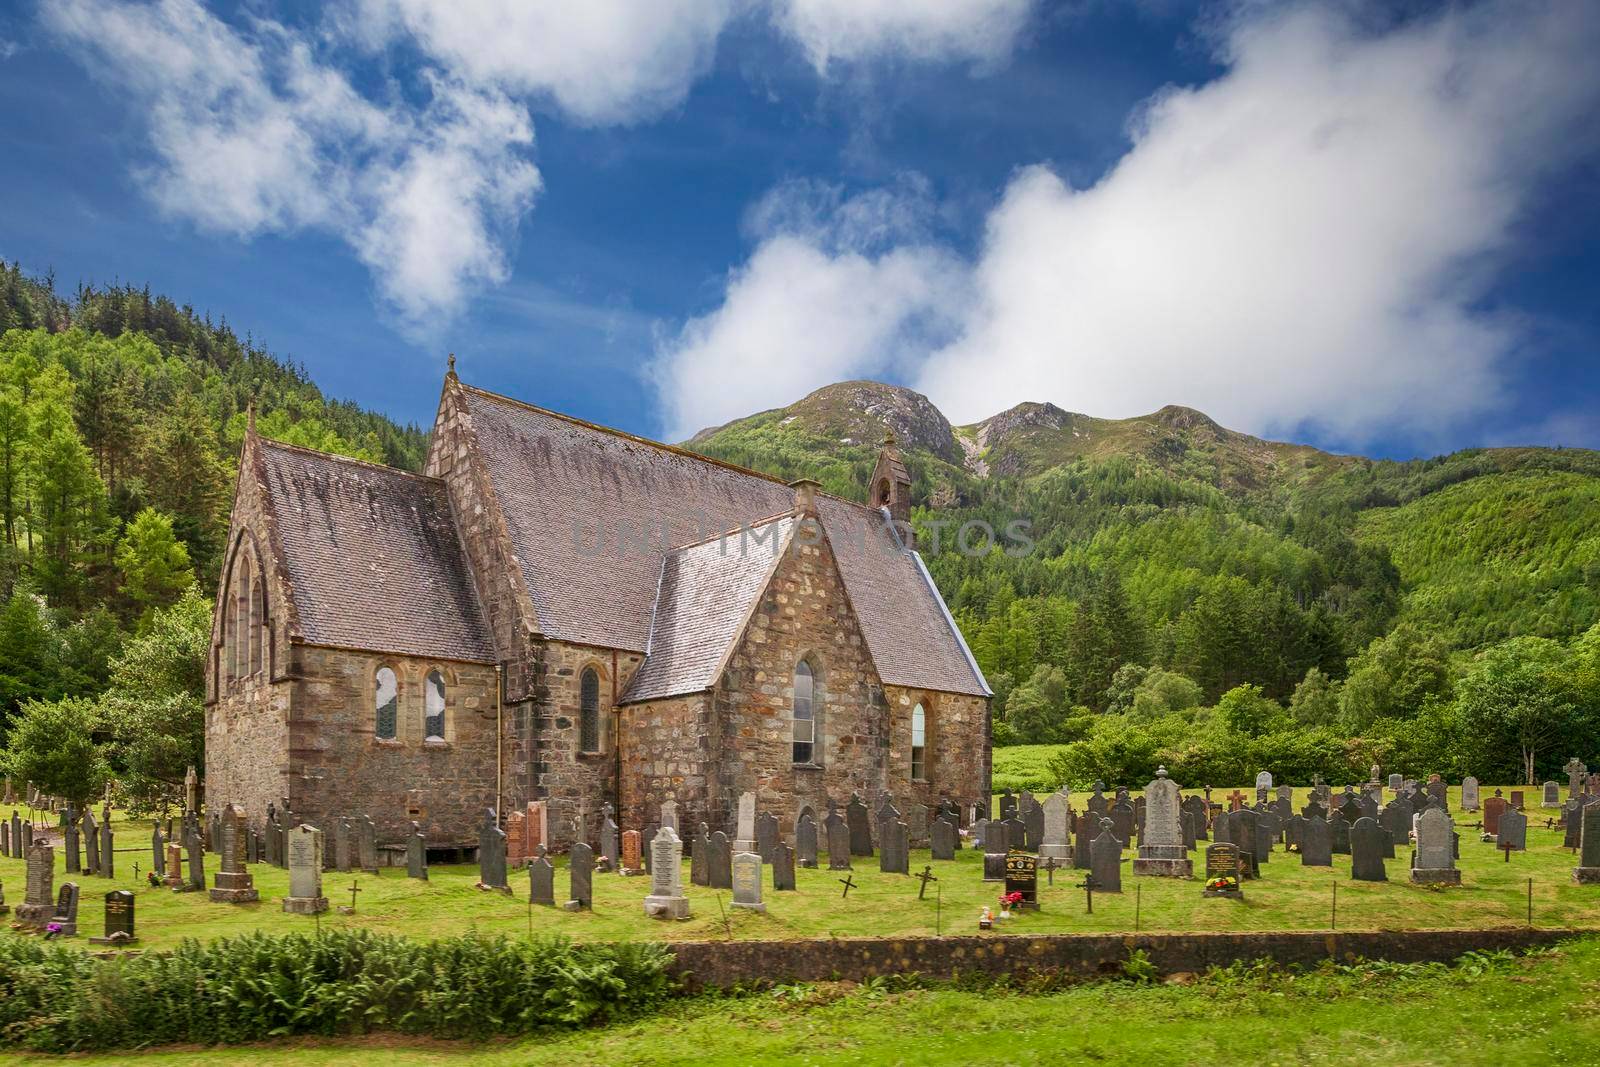 St Johns Church in Ballachulish, Scotland, UK by zhu_zhu